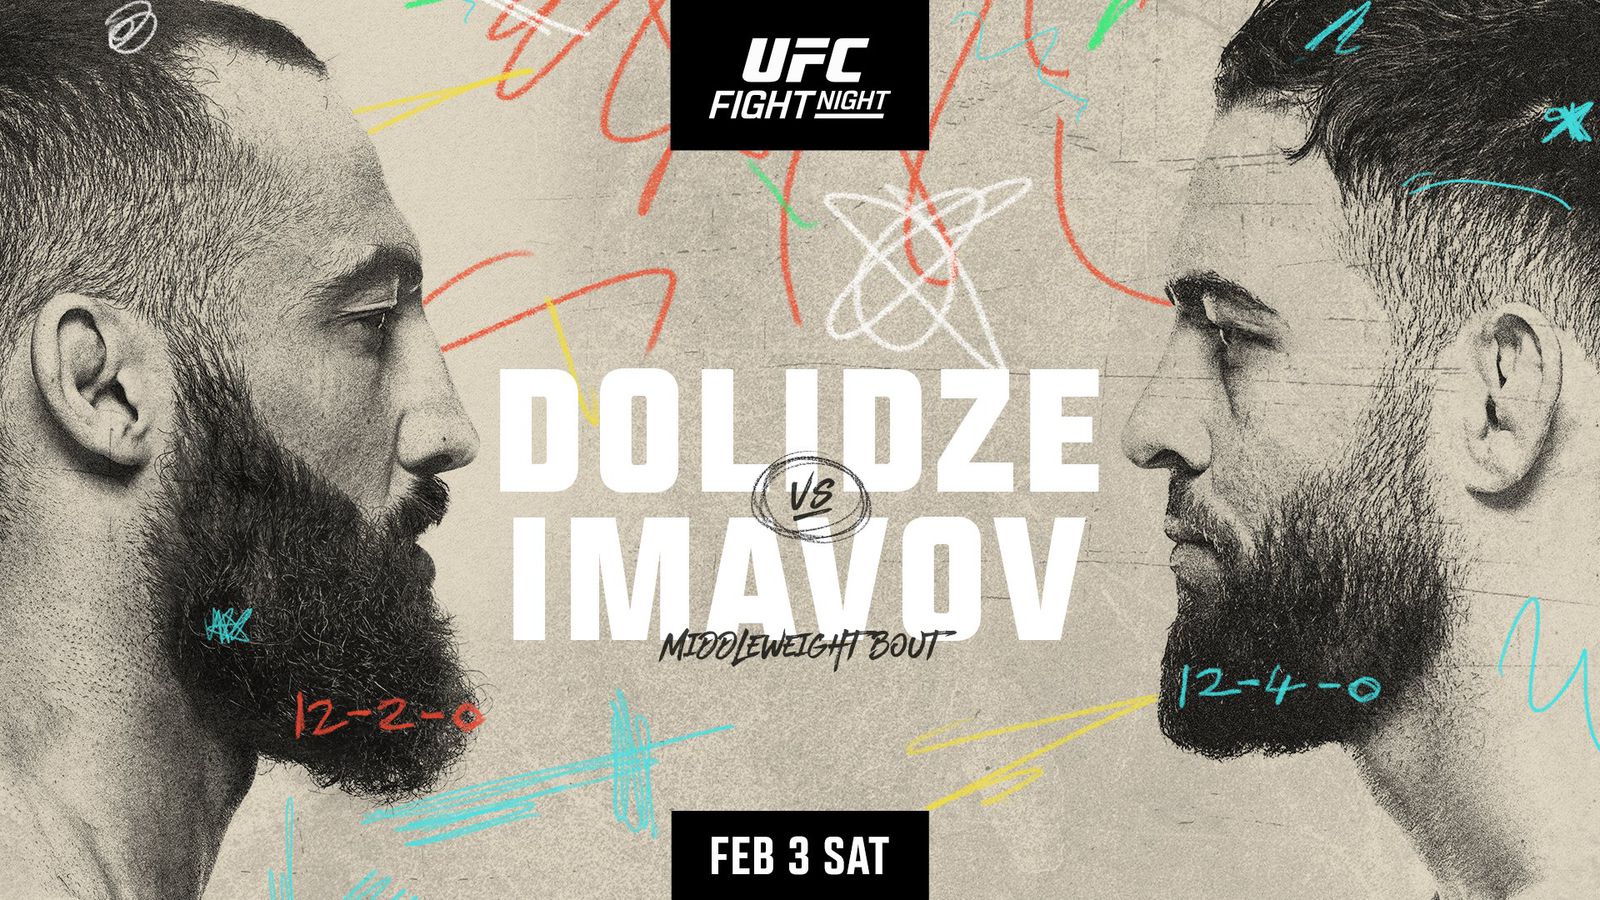 دانلود یو اف سی فایت نایت  235:  UFC Fight Night 235: Dolidze vs. Imavov